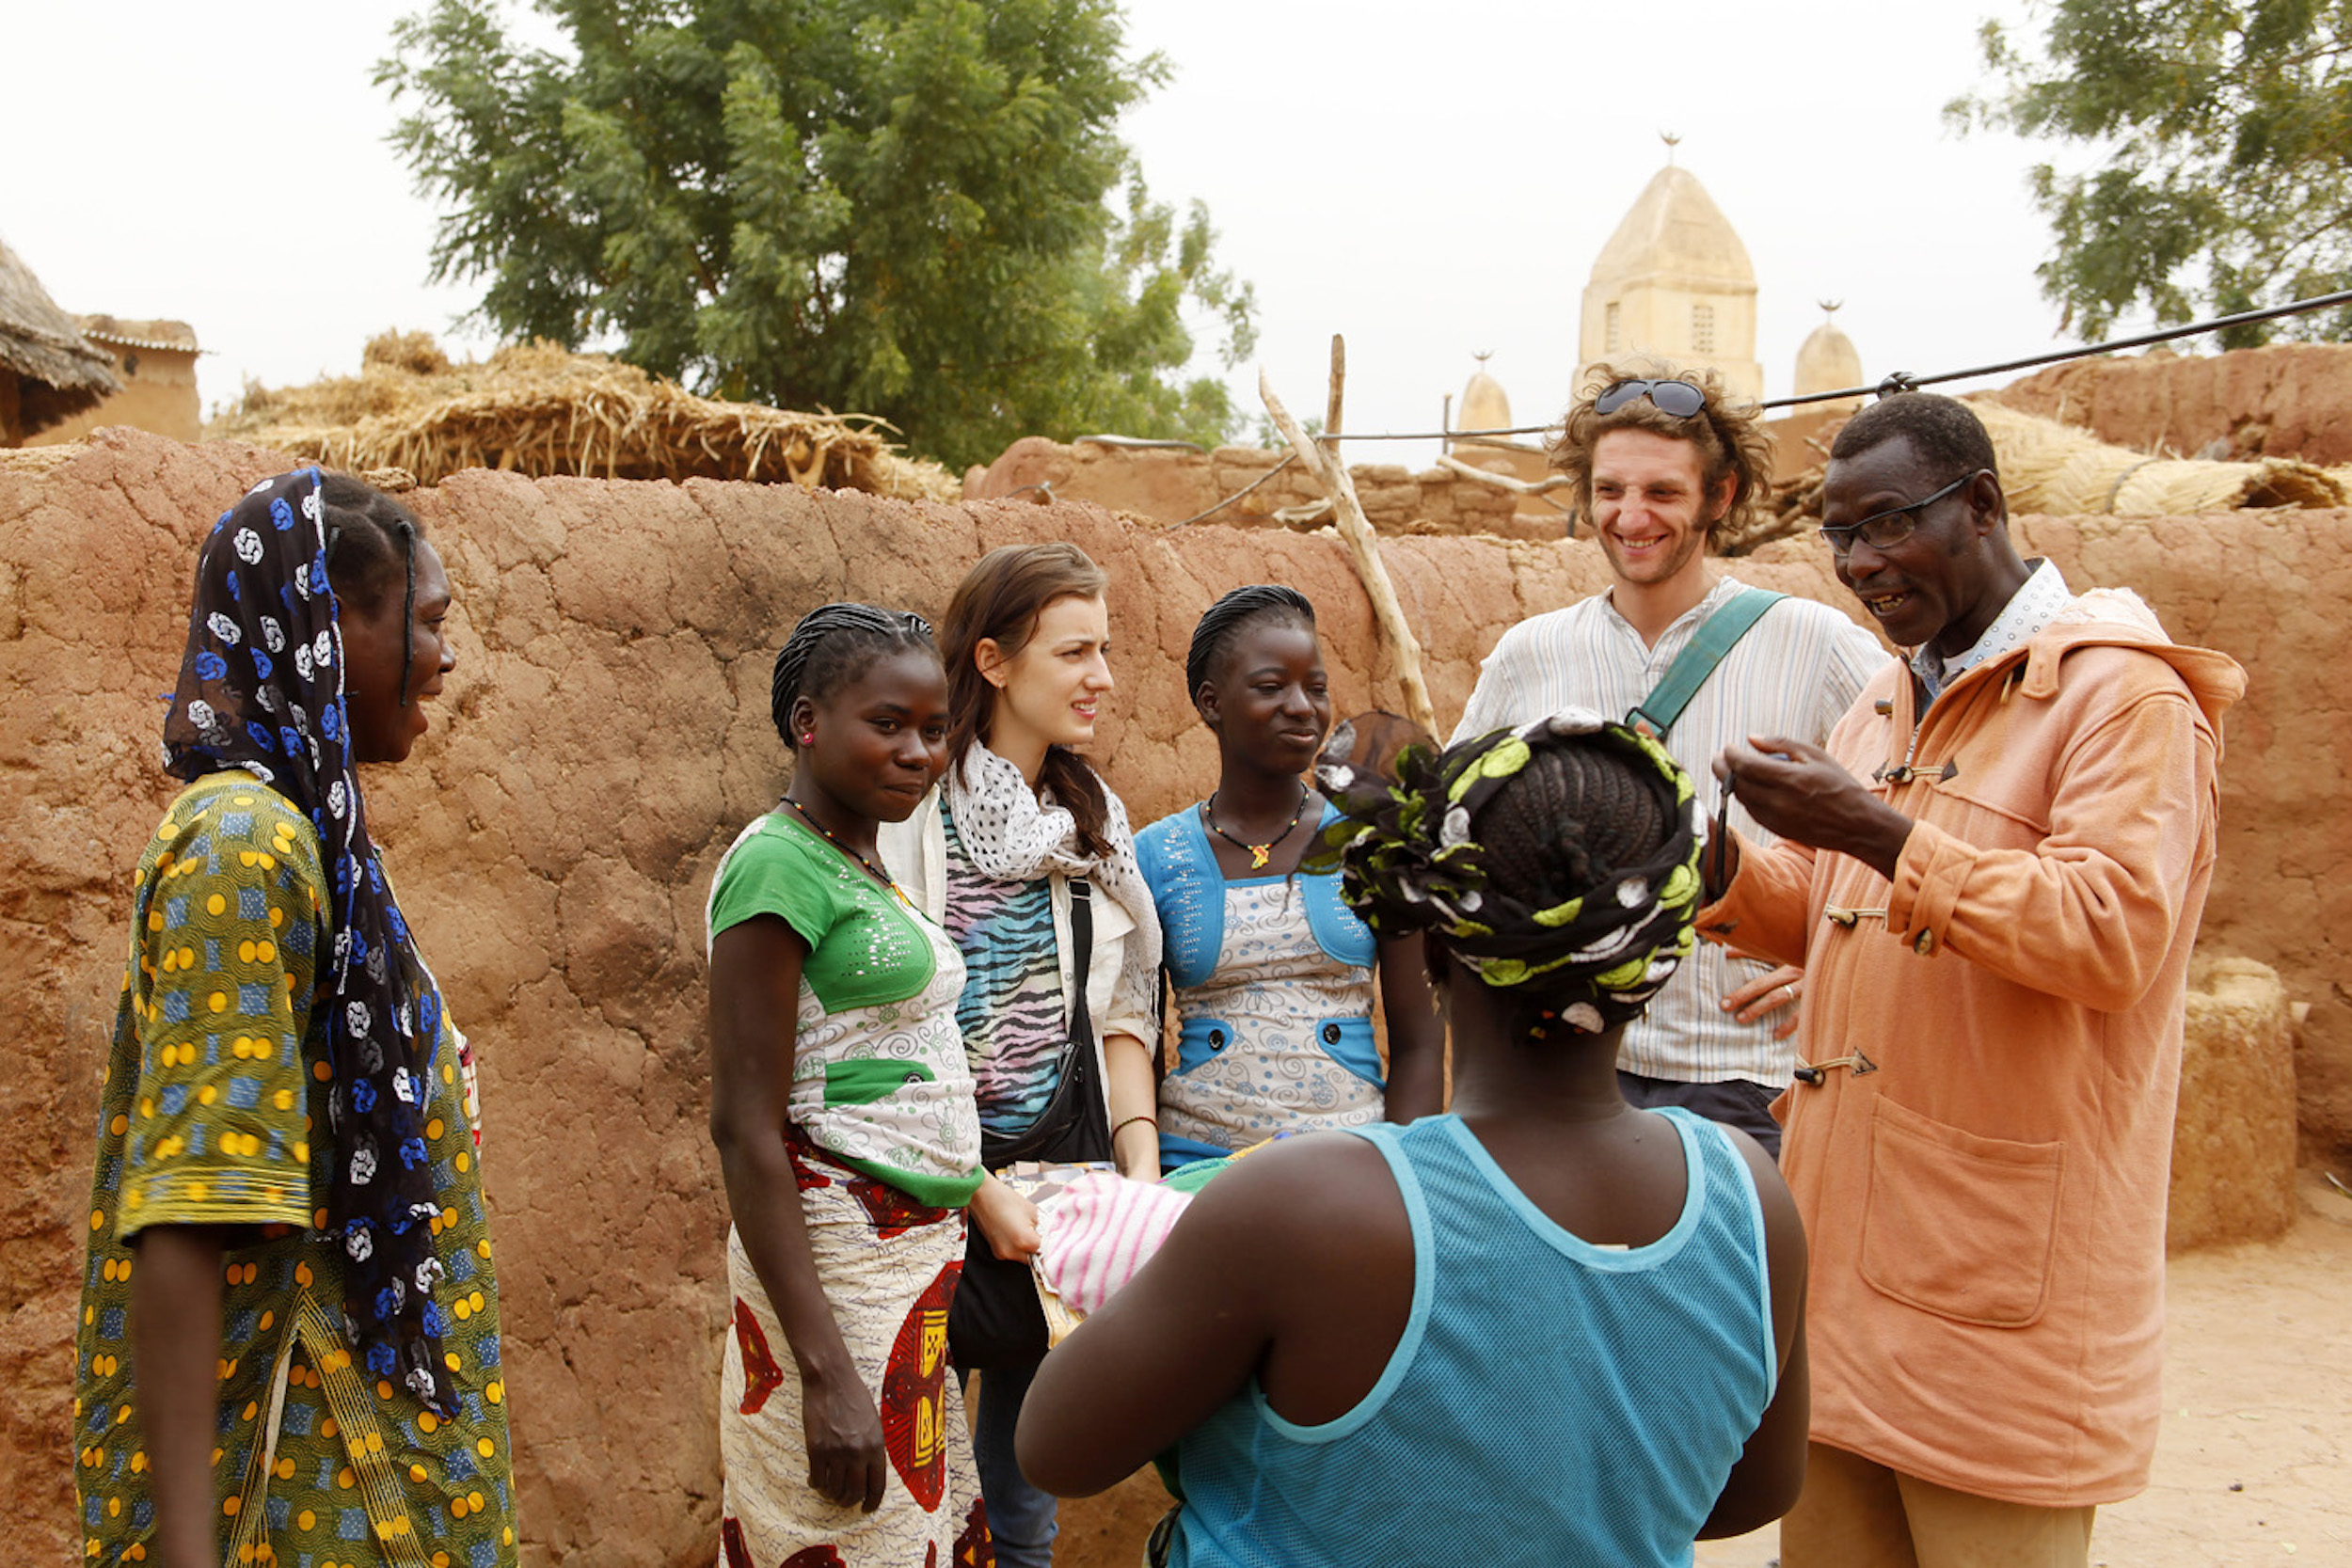 Michael Bührer fördert den kulturellen Austausch zwischen Europäern und den Menschen in Burkina Faso.